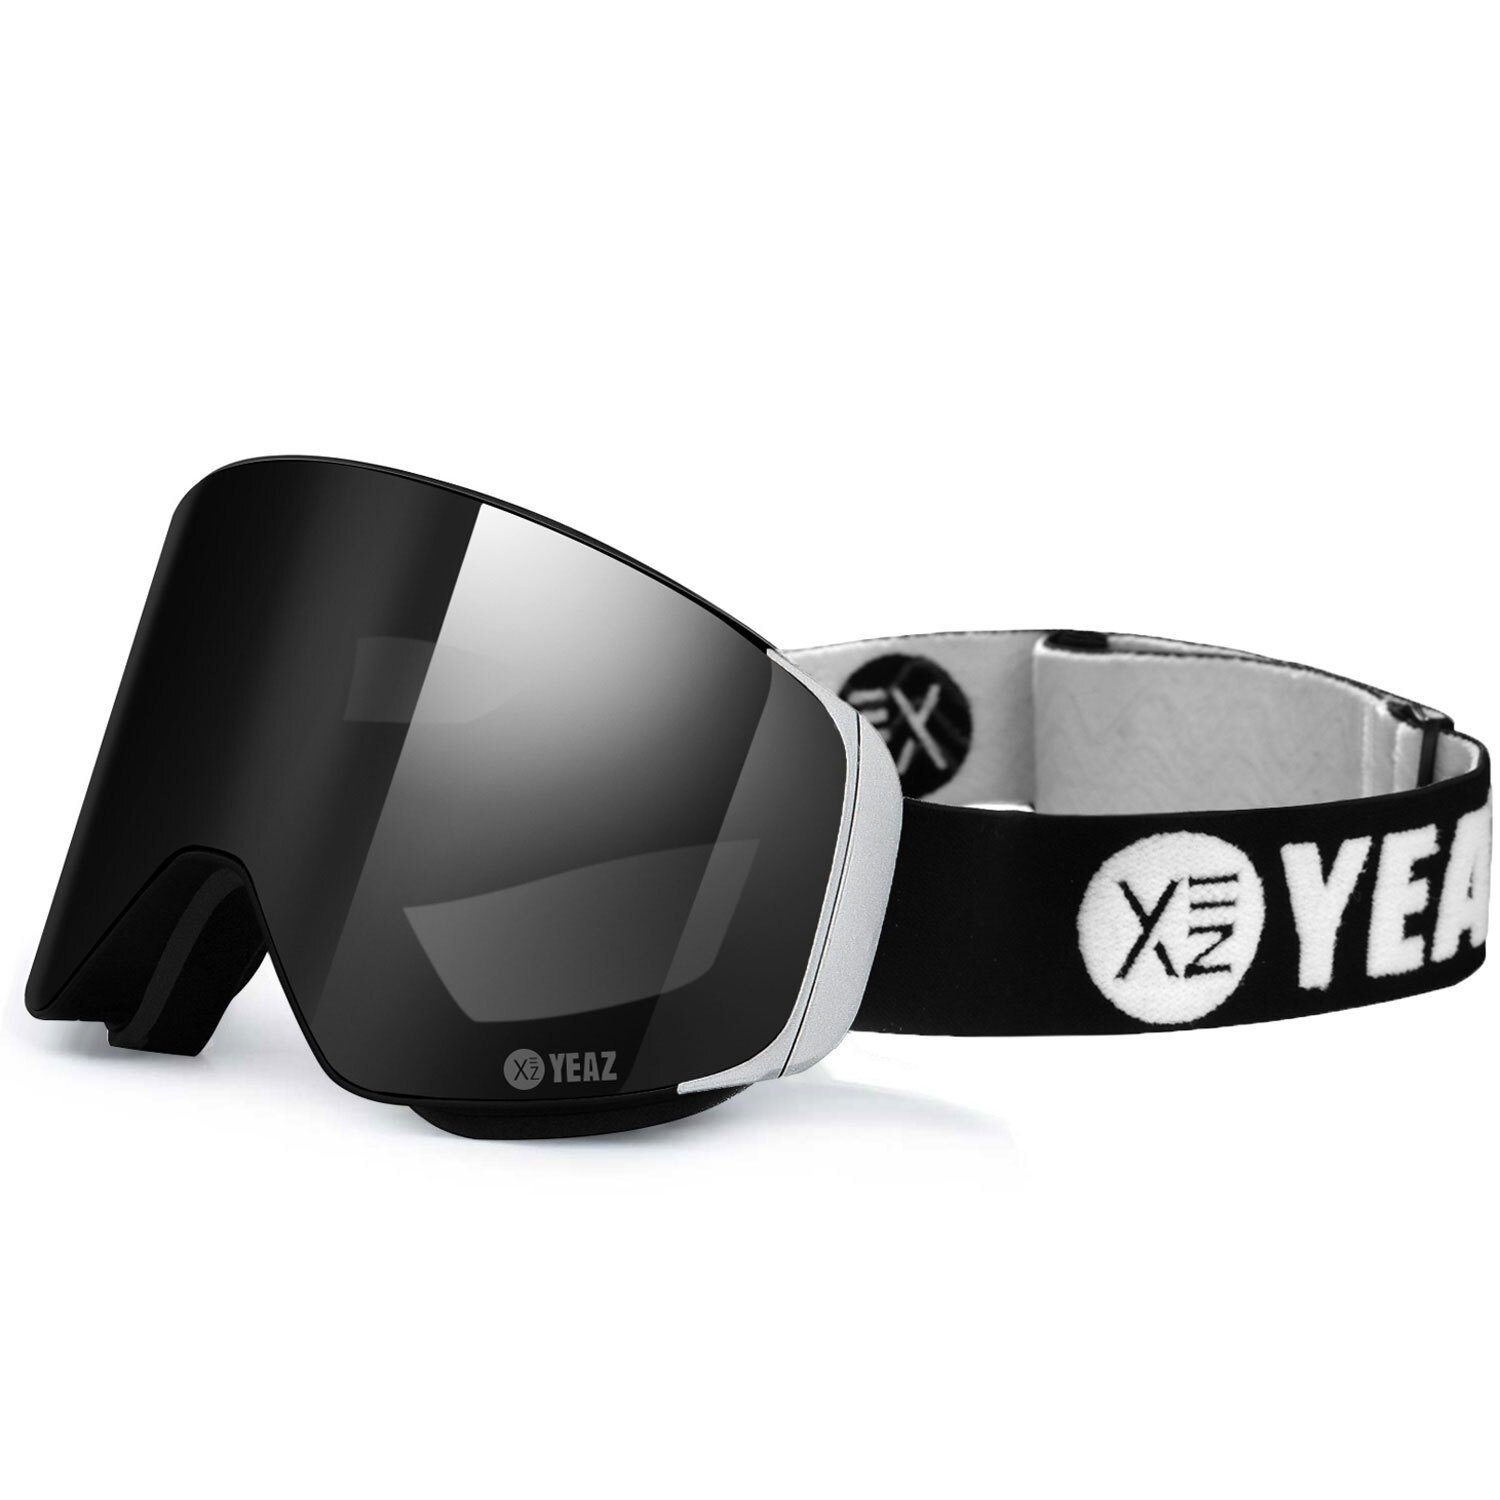 für schwarz/silber magnet-ski-snowboardbrille Gläser, Magnet-Wechsel-System APEX YEAZ schwarz/silber, Skibrille